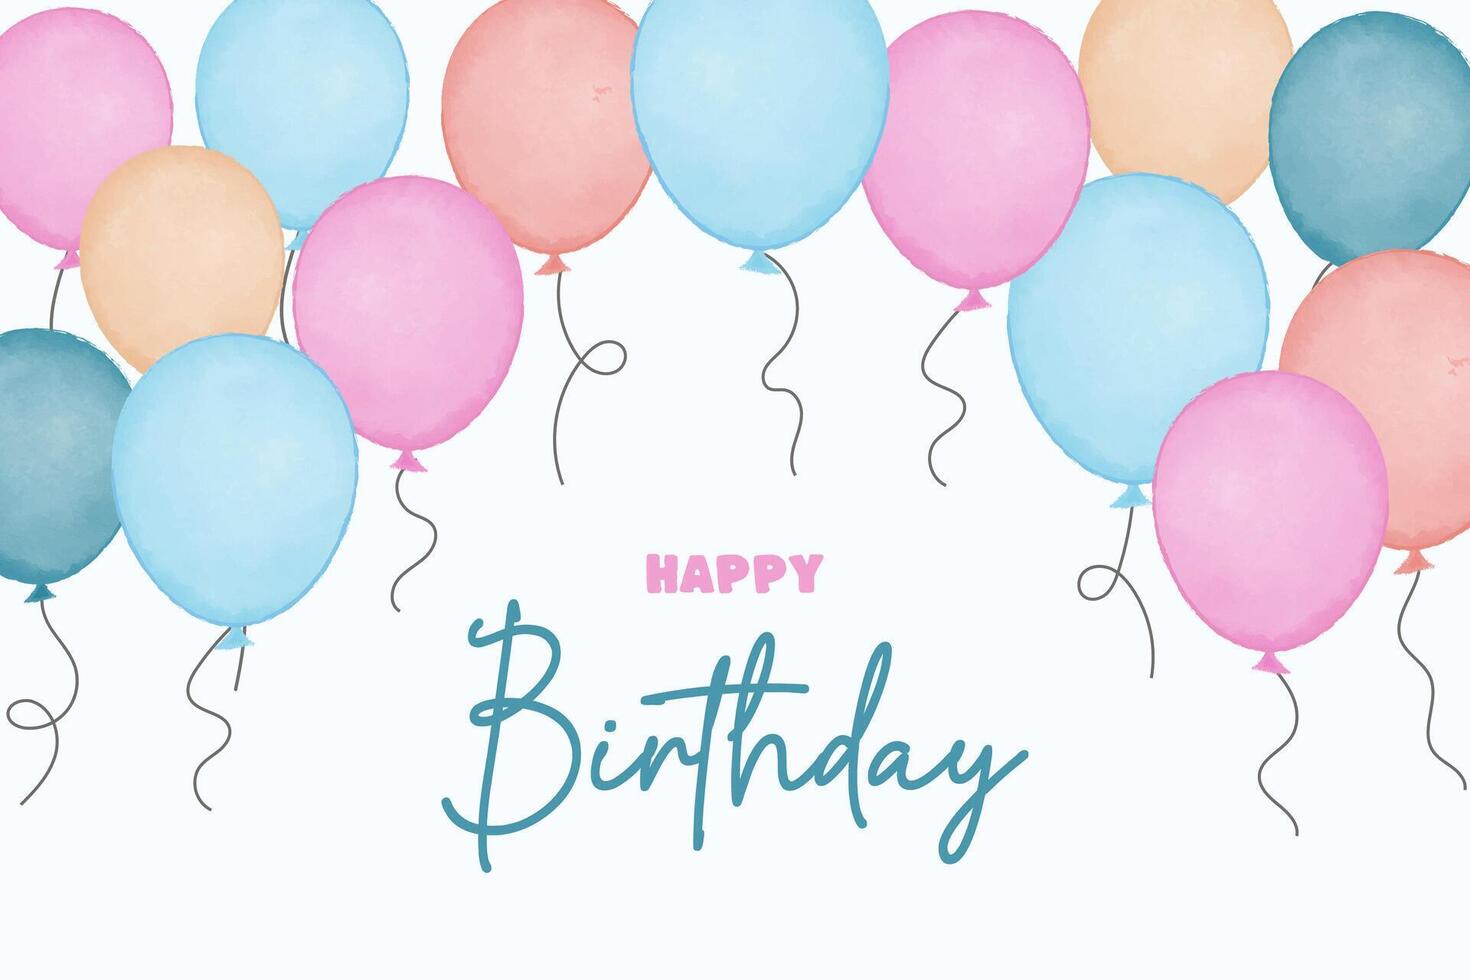 kaarten voor uitnodiging, verjaardag. waterverf ballonnen illustratie vector